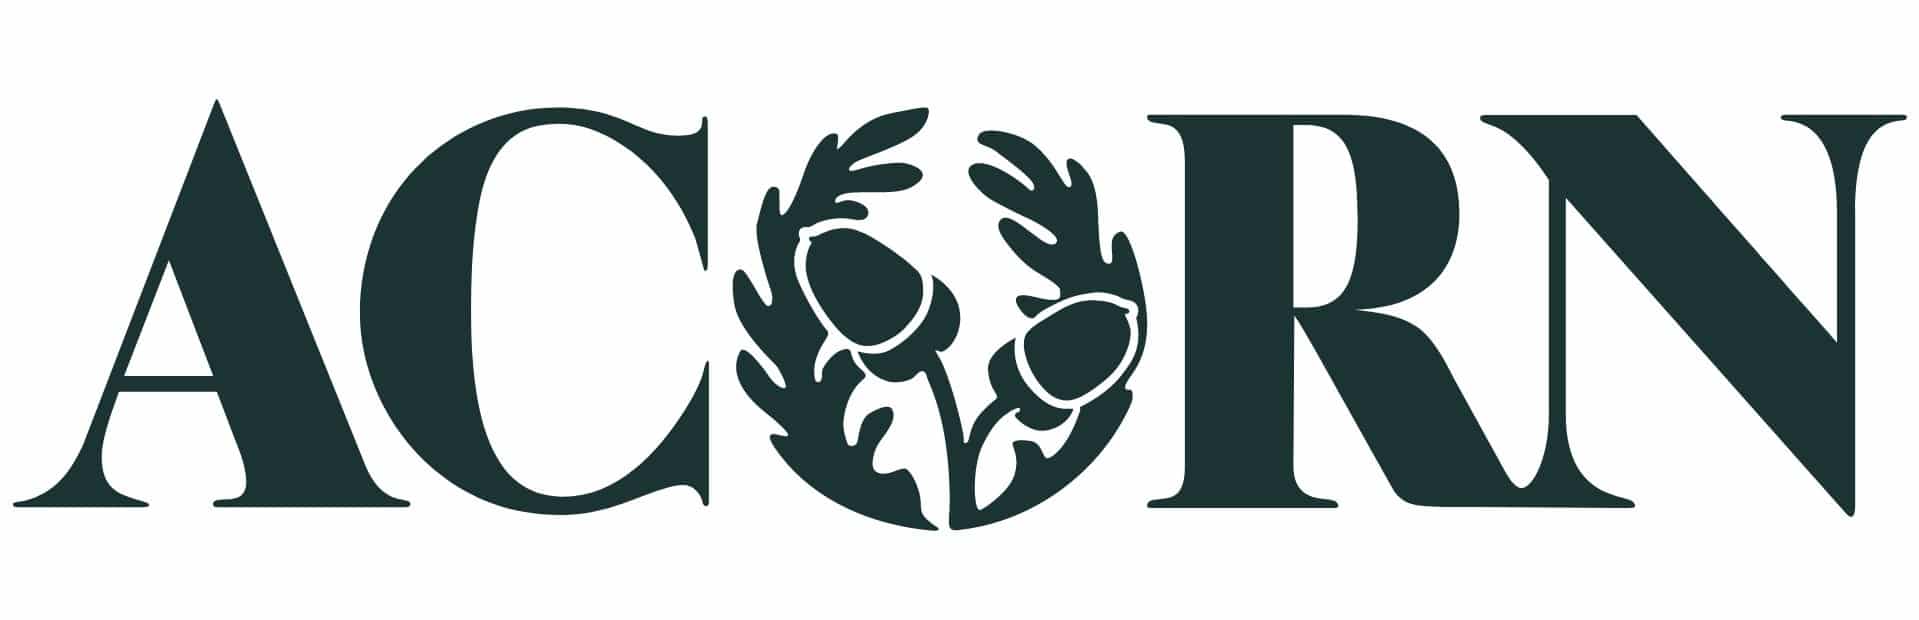 acorn-developments-logo